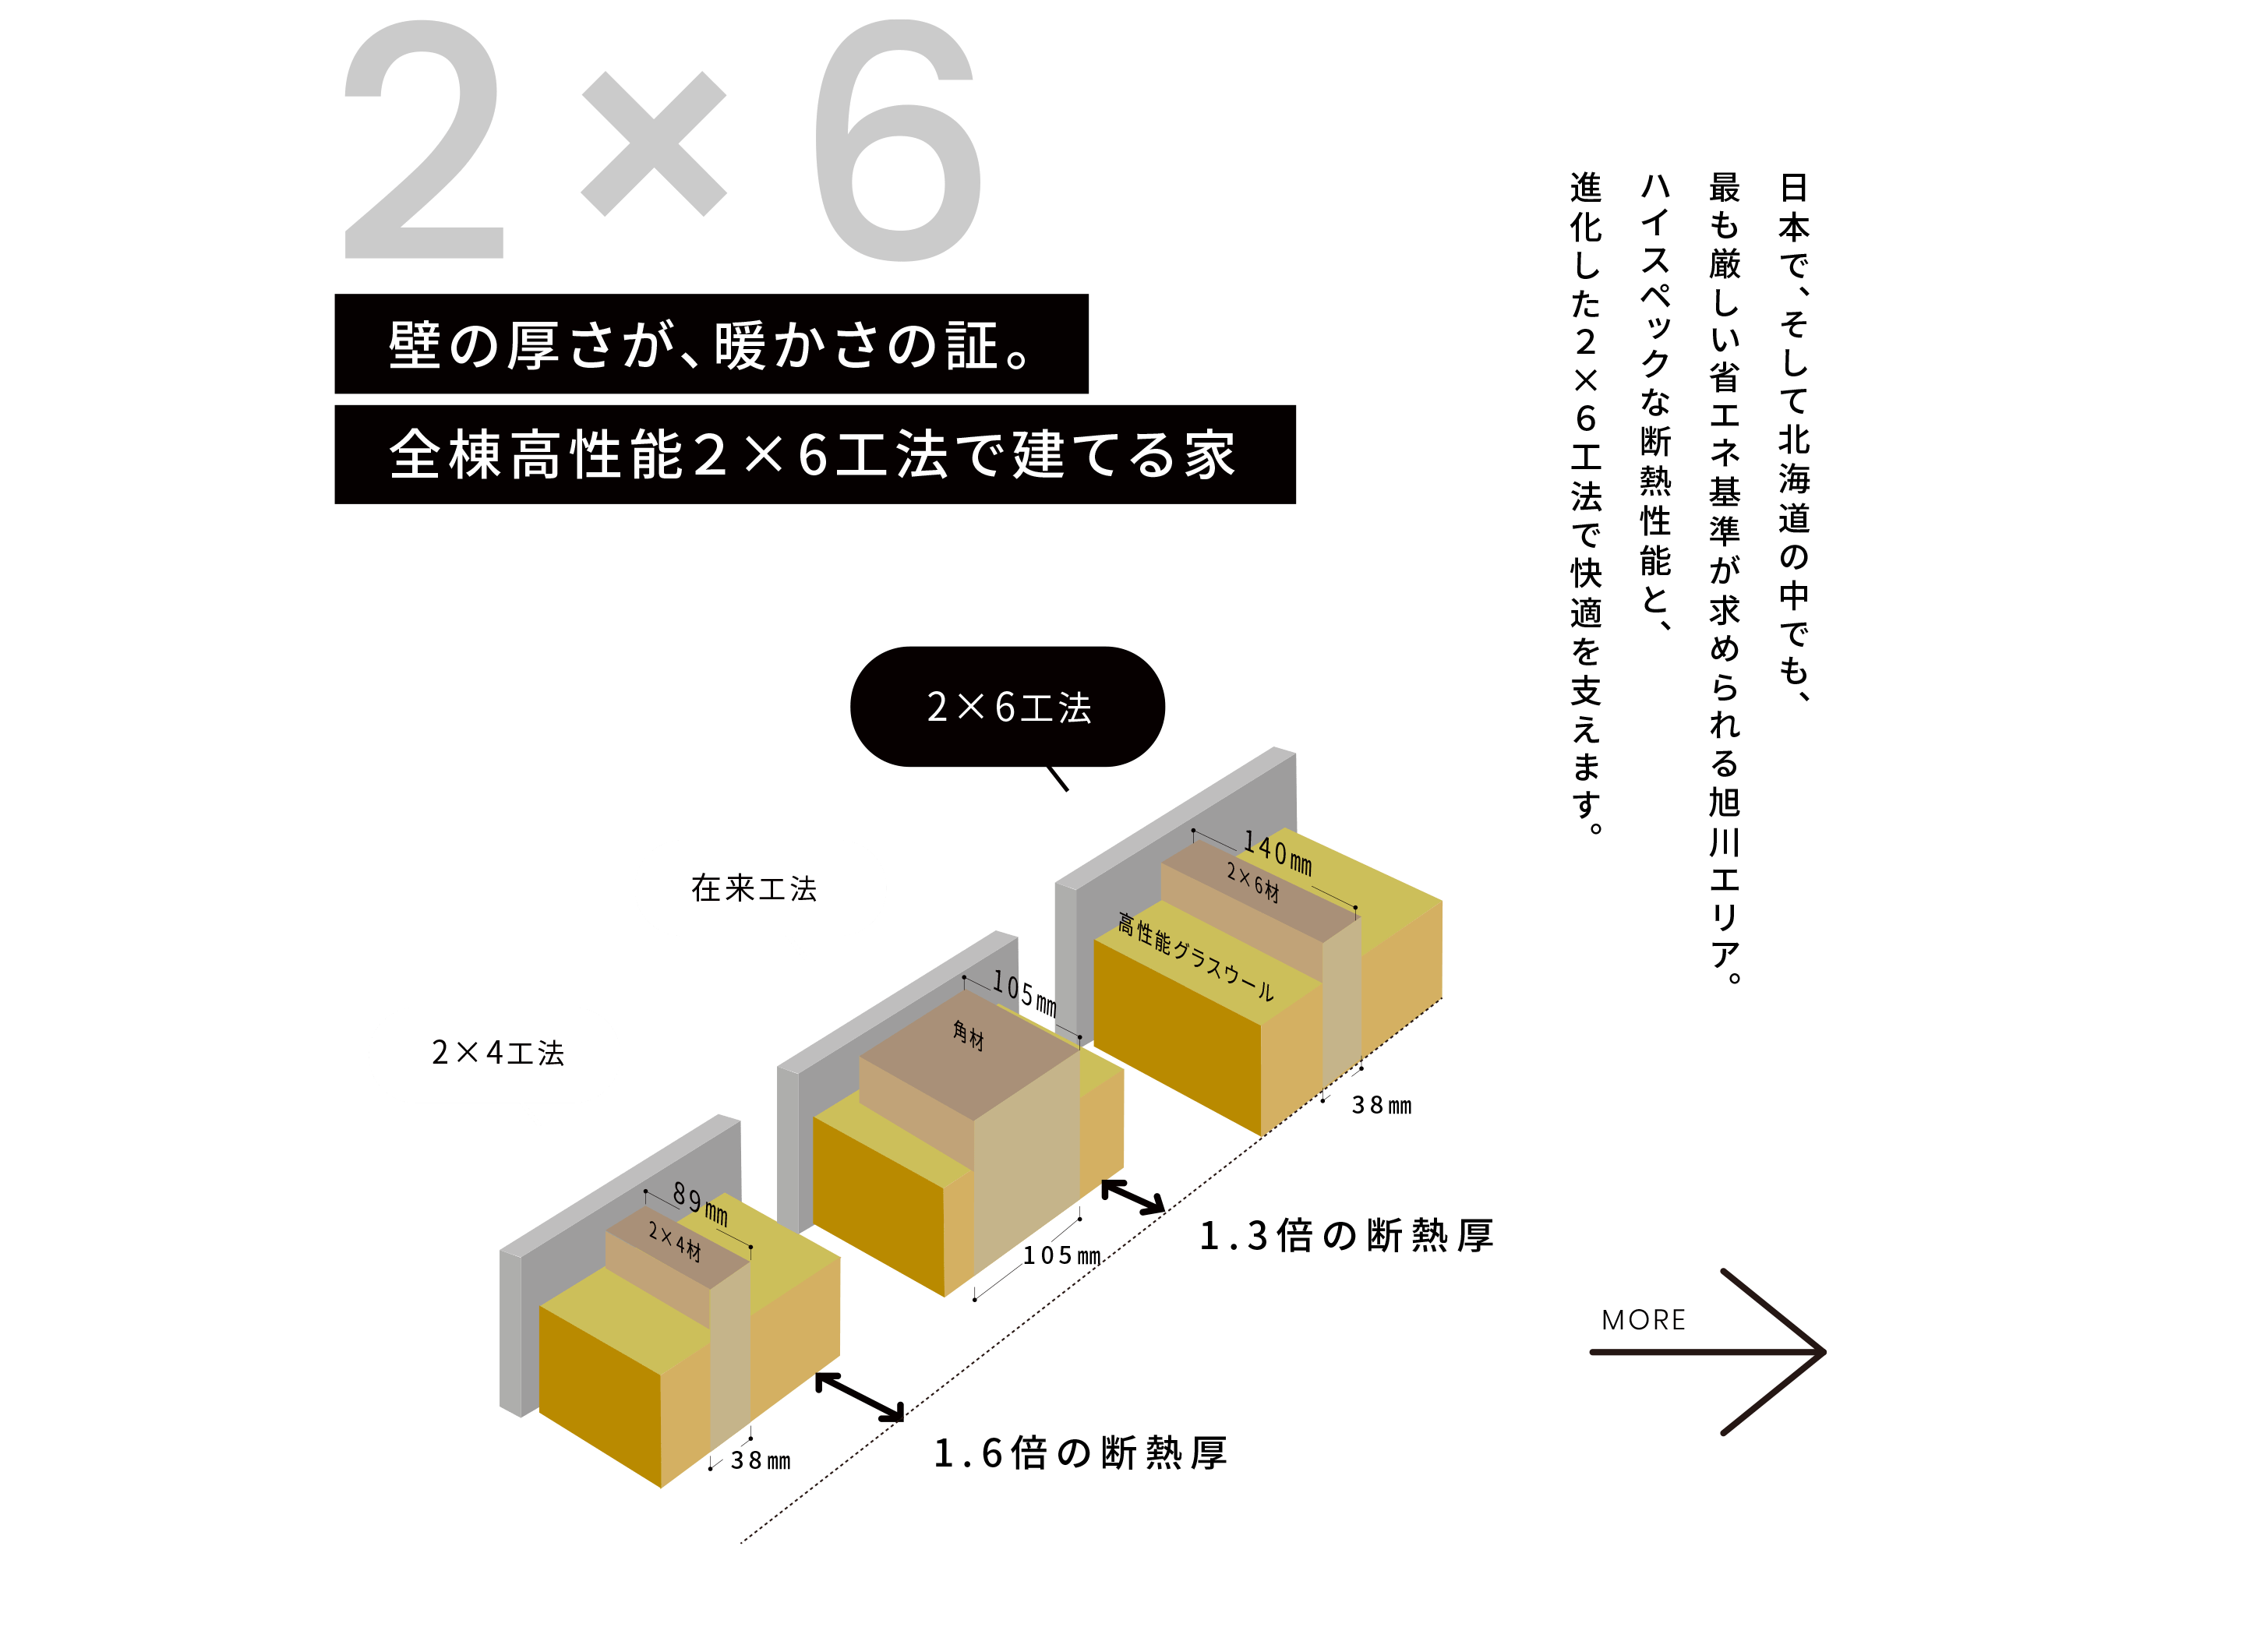 2×6 壁の厚さが、暖かさの証。全棟高性能２×6工法で建てる家 - 日本で、そして北海道の中でも、最も厳しい省エネ基準が求められる旭川エリア。ハイスペックな断熱性能と、進化した２×６工法で快適を支えます。 MORE→